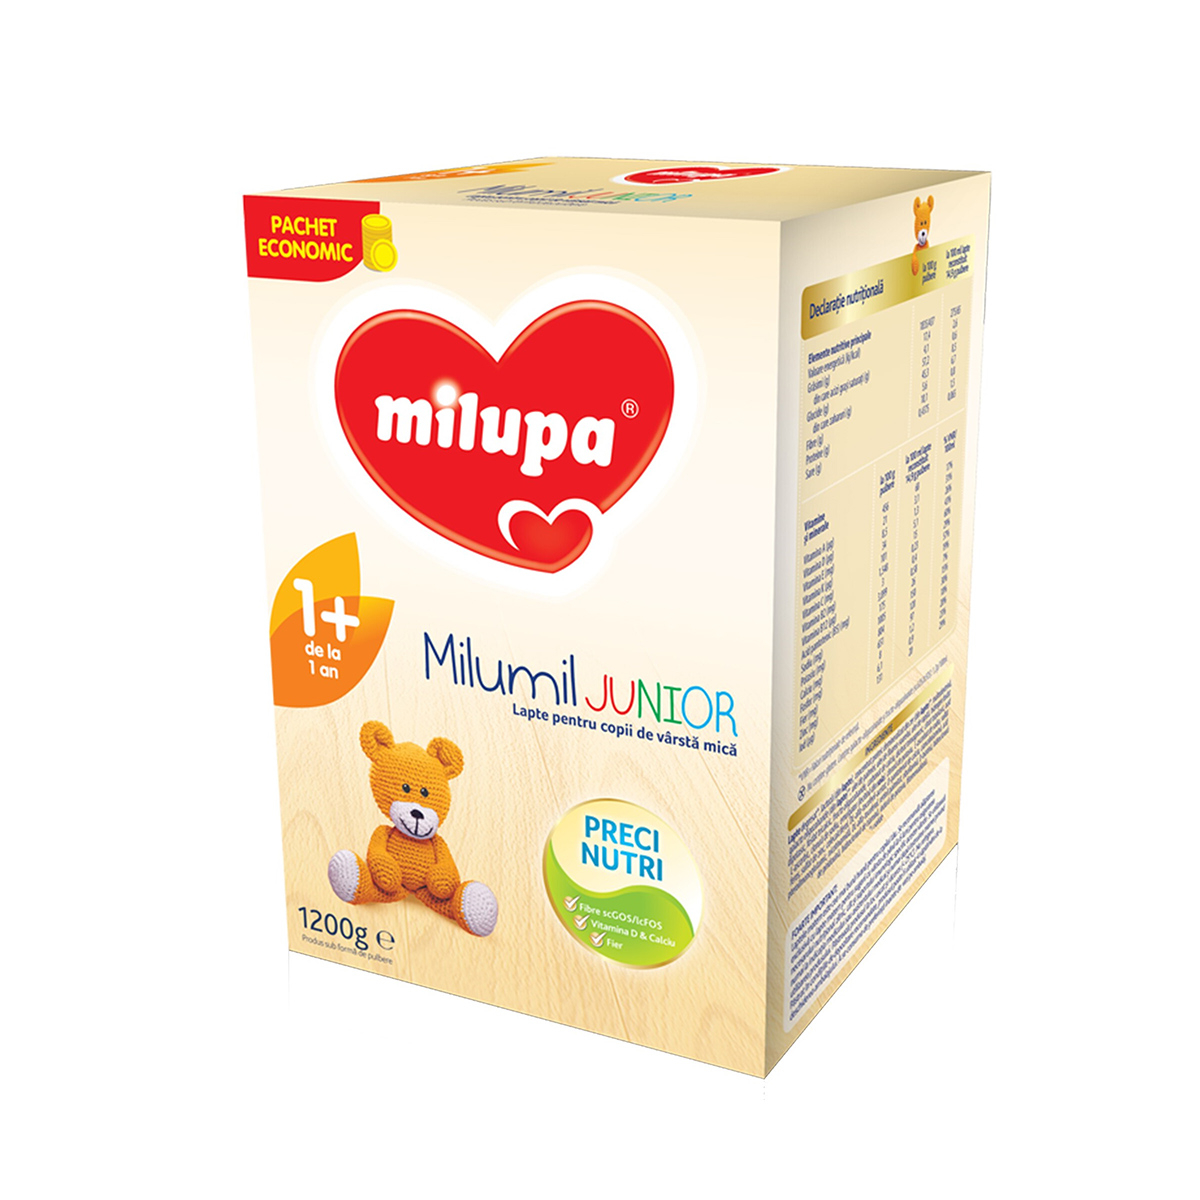 Alimentatie copii - MILUPA MILUMIL JUNIOR 1+ 1200G, nordpharm.ro